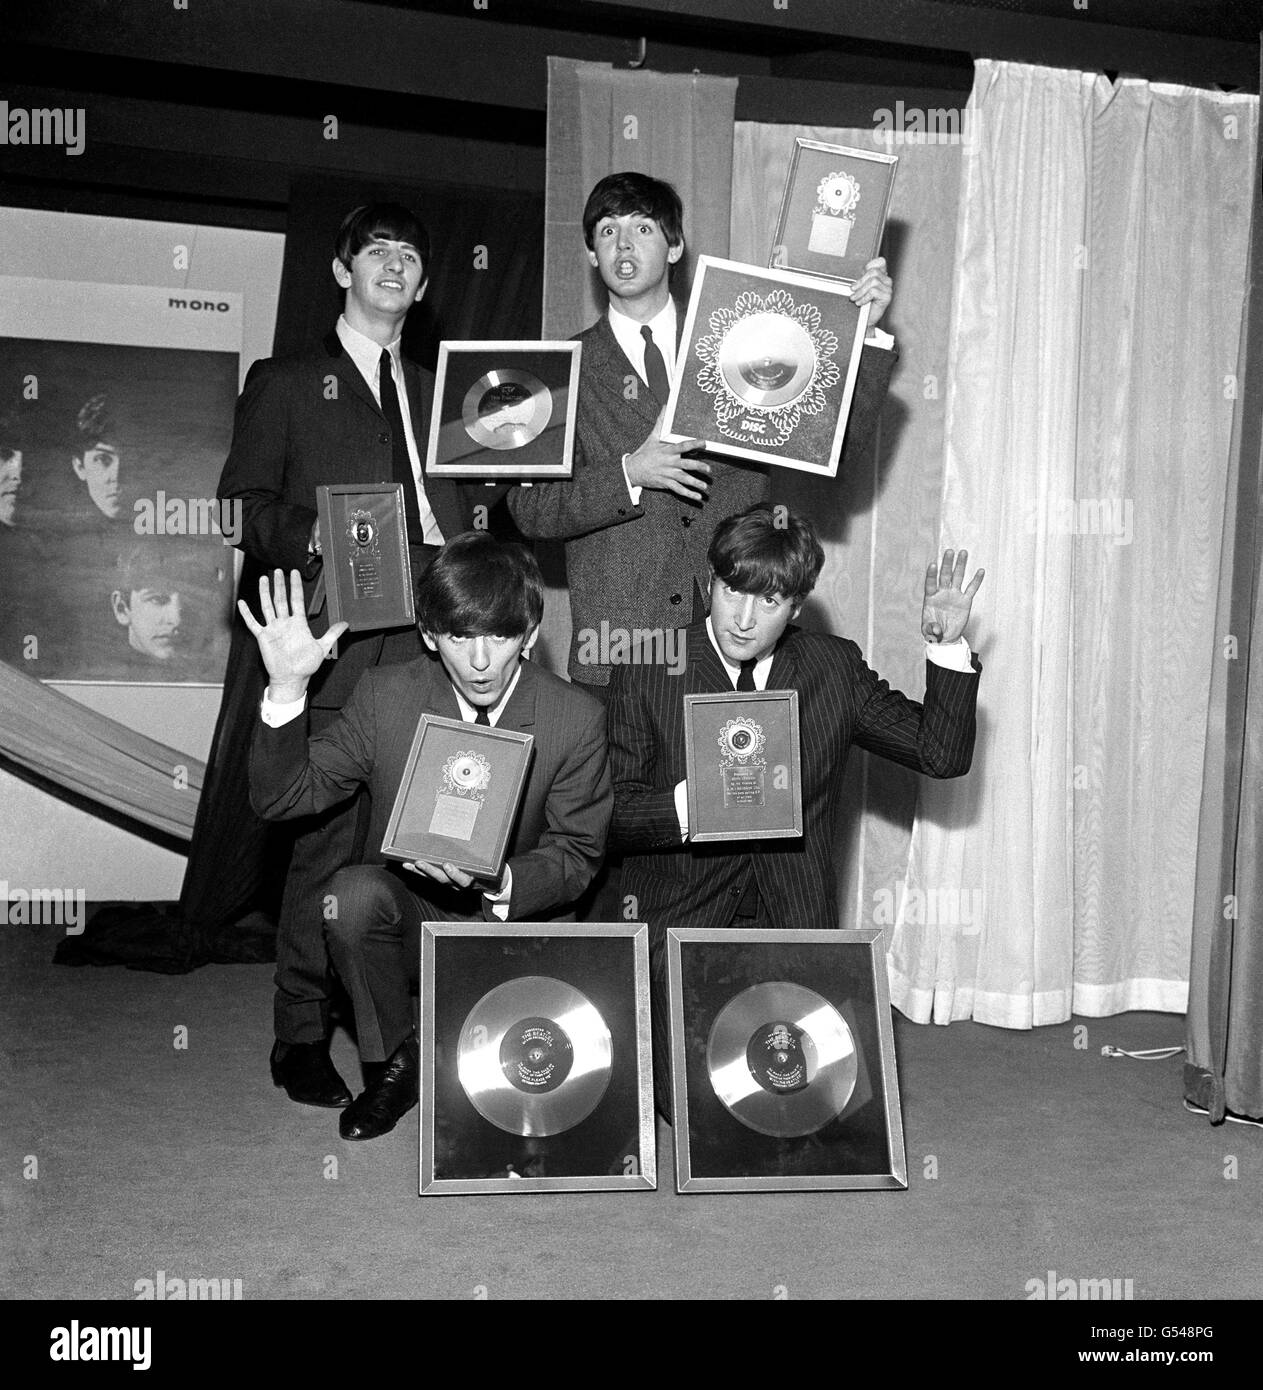 I Beatles, raffigurati all'EMI House Manchester Square, Londra, con un tesoro di dischi d'argento. Sono stati presentati due LP d'argento per segnare il quarto di milione più le vendite del loro primo LP "Please Me" e del loro nuovo "With the Beatles", nonché per il loro EP "Twist & Shout" e "Shhe Loves You". Da sinistra a destra: Ringo Starr, George Harrison, Paul McCartney e John Lennon. Foto Stock